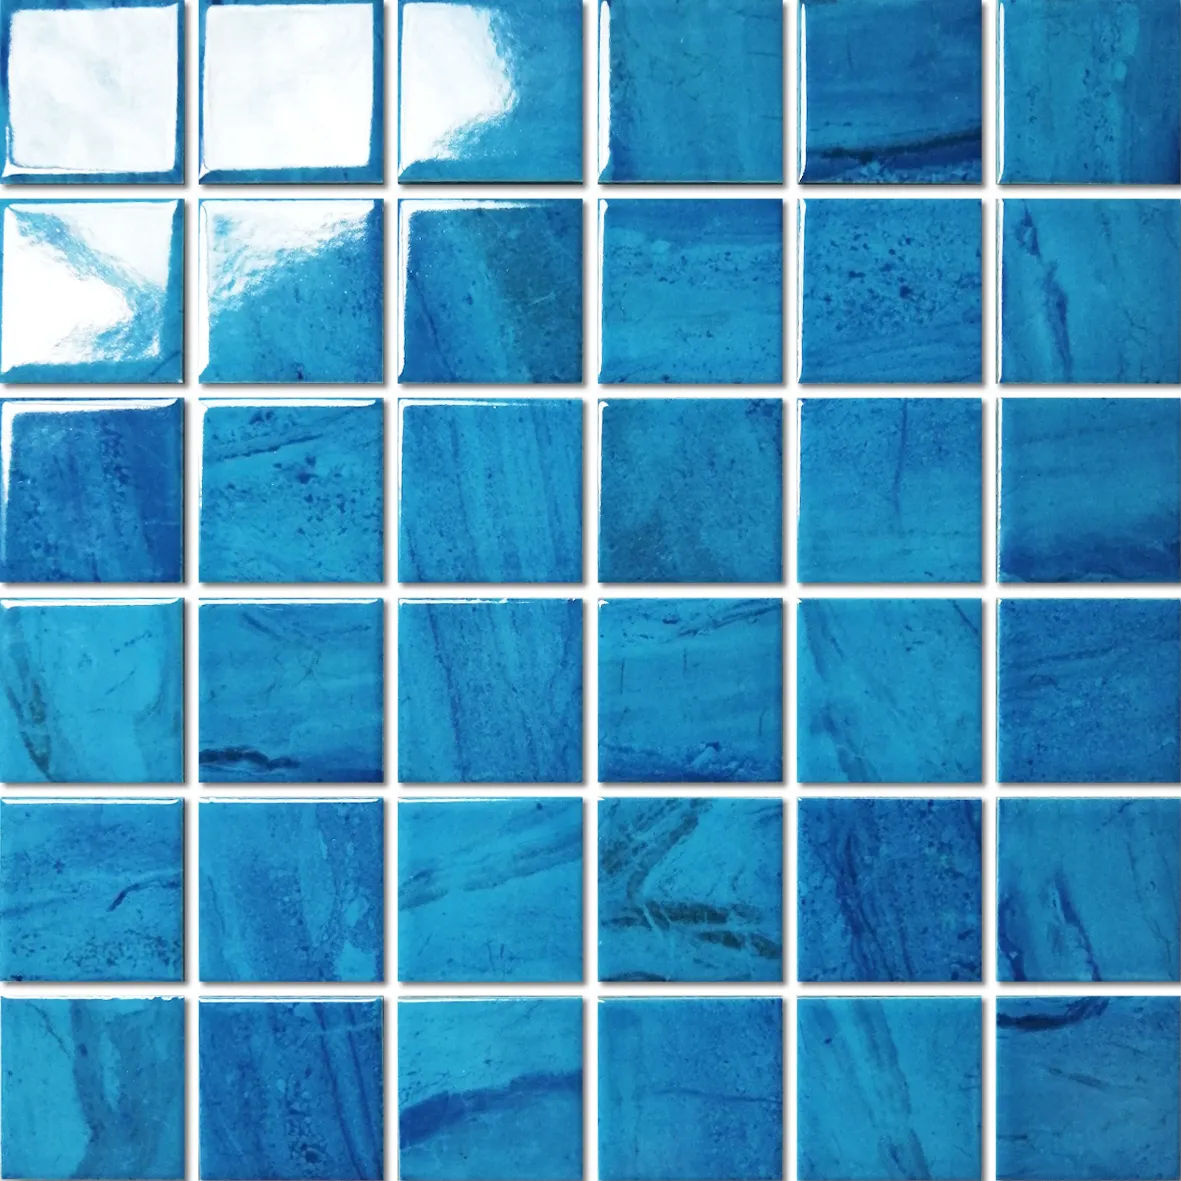 Hasin Reine Farbe Große Größe Ganze Verkauf Beliebte Blau Glasierte Quadratische Form Für Schwimmbad Keramik Mosaik Fliesen